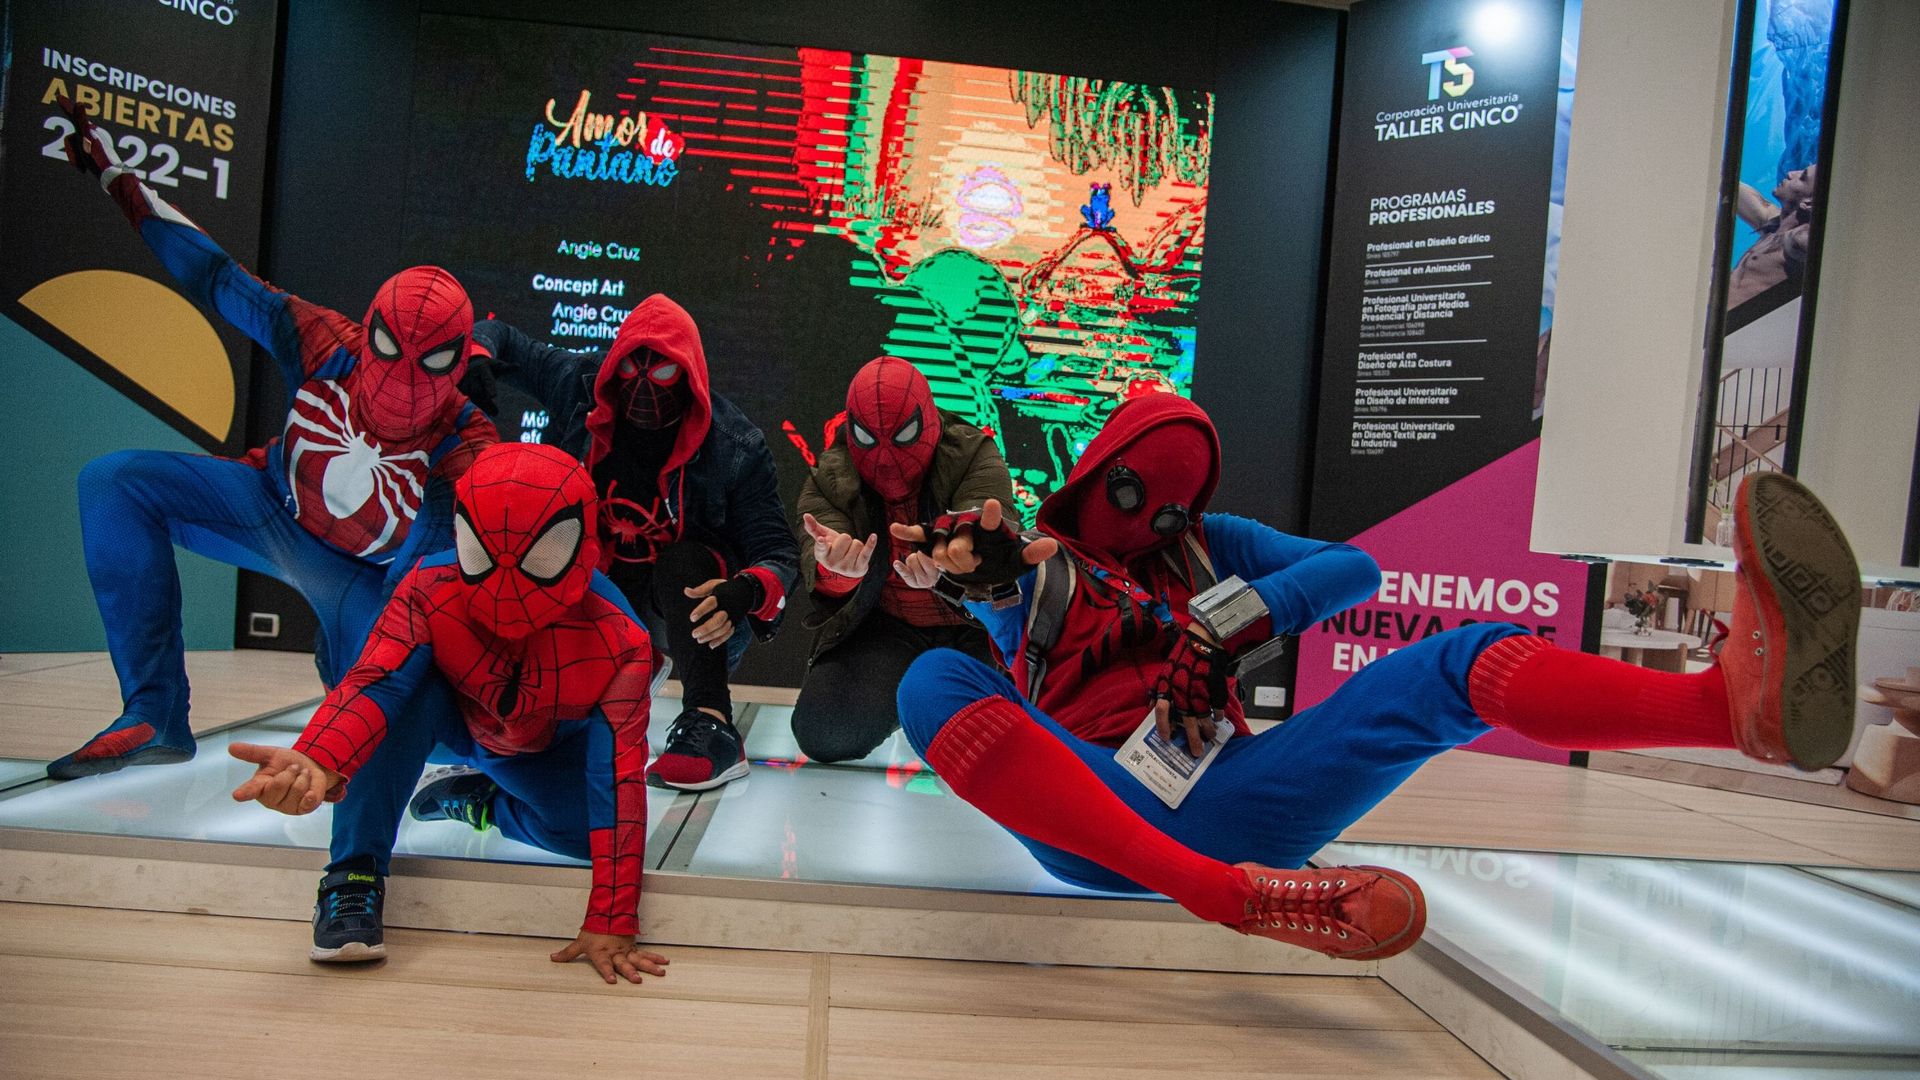 Plusieurs personnes jouent différentes versions de Spider Man, le super-héros de Marvel, lors du dernier jour du SOFA (Salon del Ocio y la Fantasia) 2021, une foire destinée au public geek de Colombie qui réunit des fans de Cosplay, de jeux, de super-héro